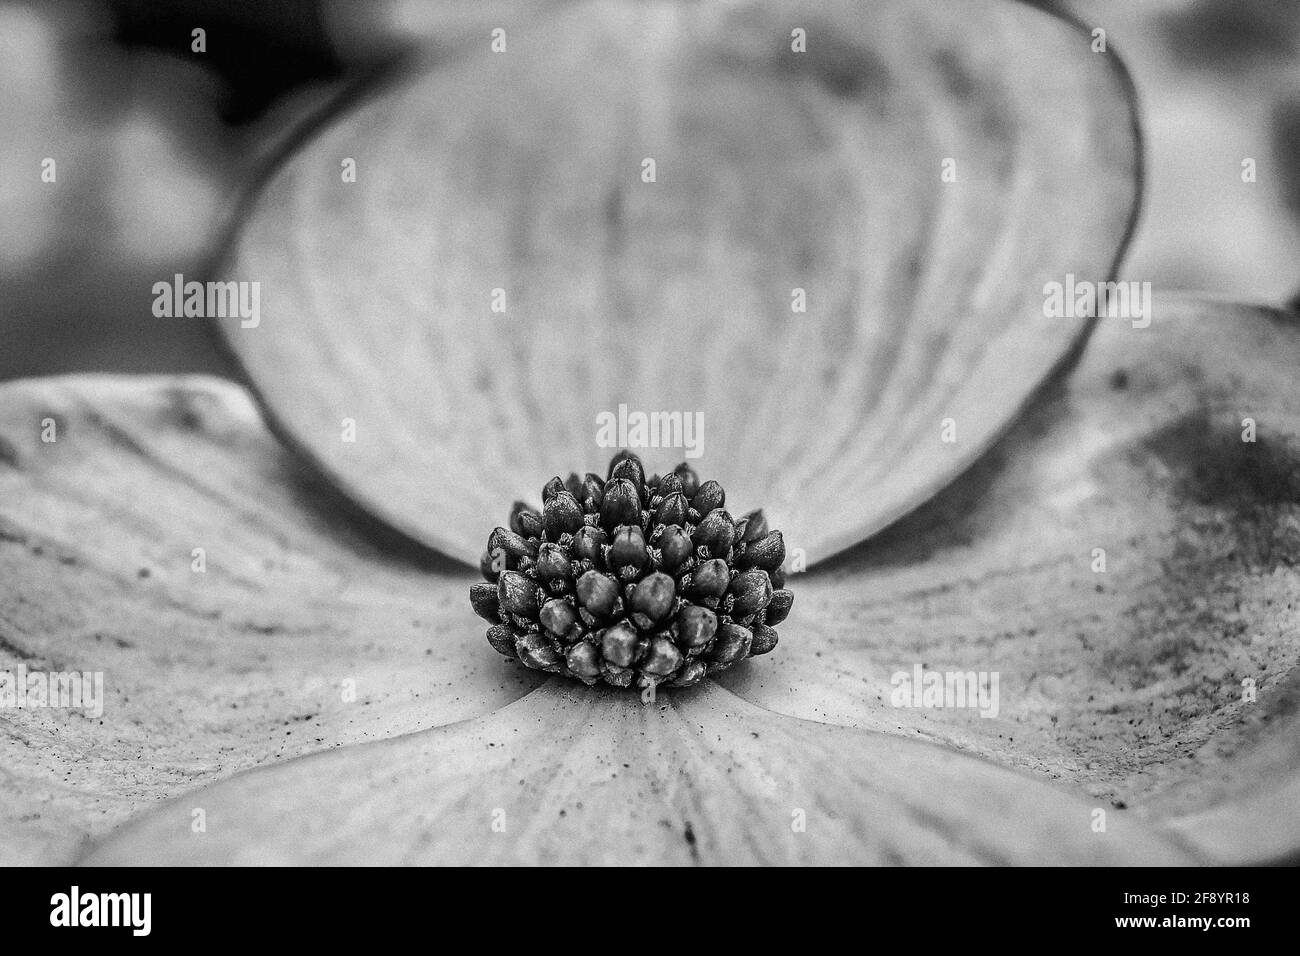 Primo piano immagine di un fiore di dogwood in bianco e nero Foto Stock